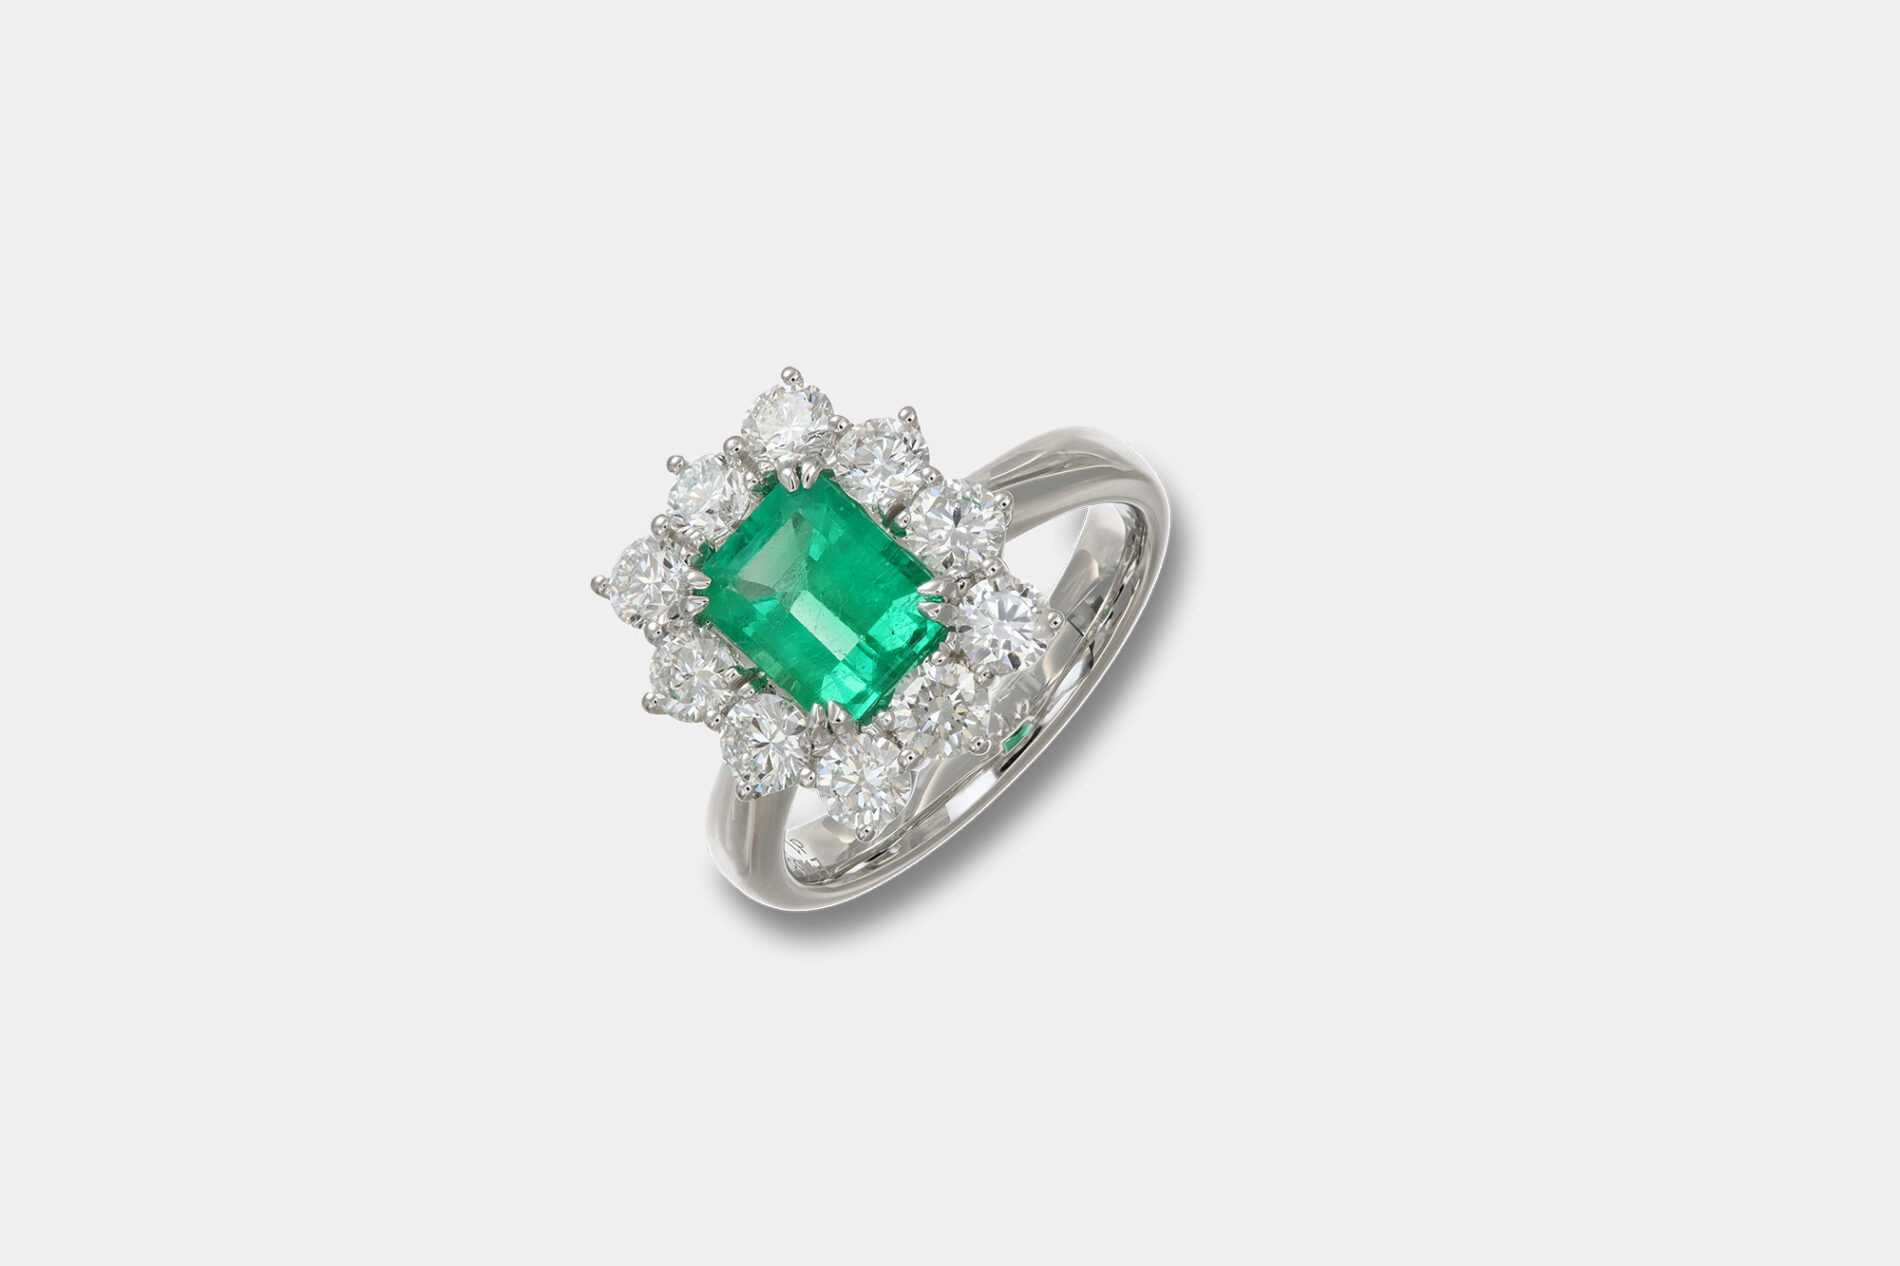 Anello smeraldo taglio ottagonale Prestige - Gioielleria Casavola di Noci - idee regalo anniversario matrimonio donna - oro bianco